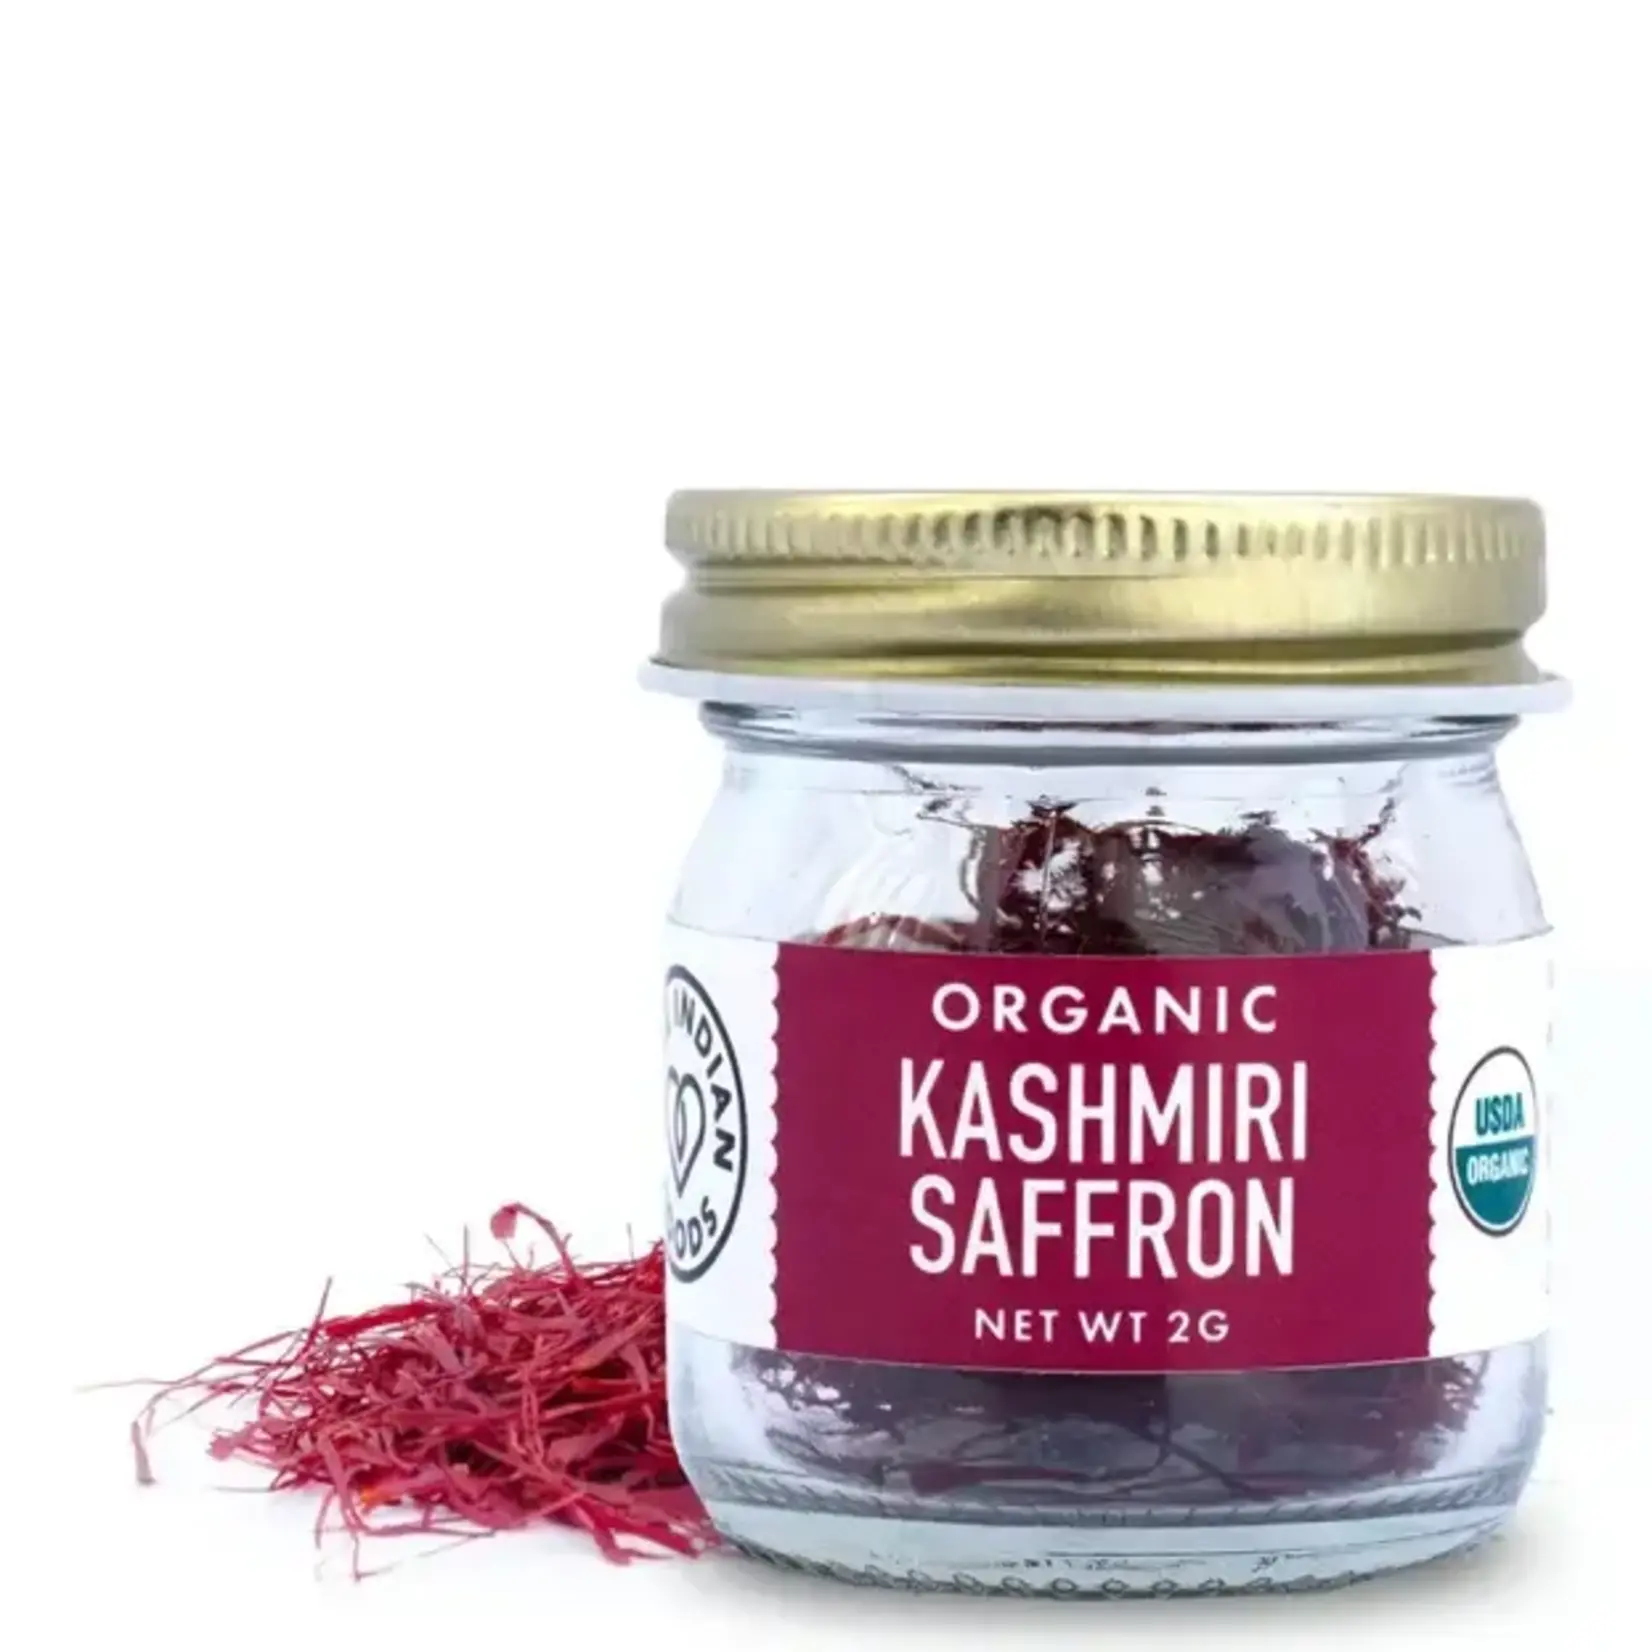 Pure Indian Foods Kashmiri Saffron 2g